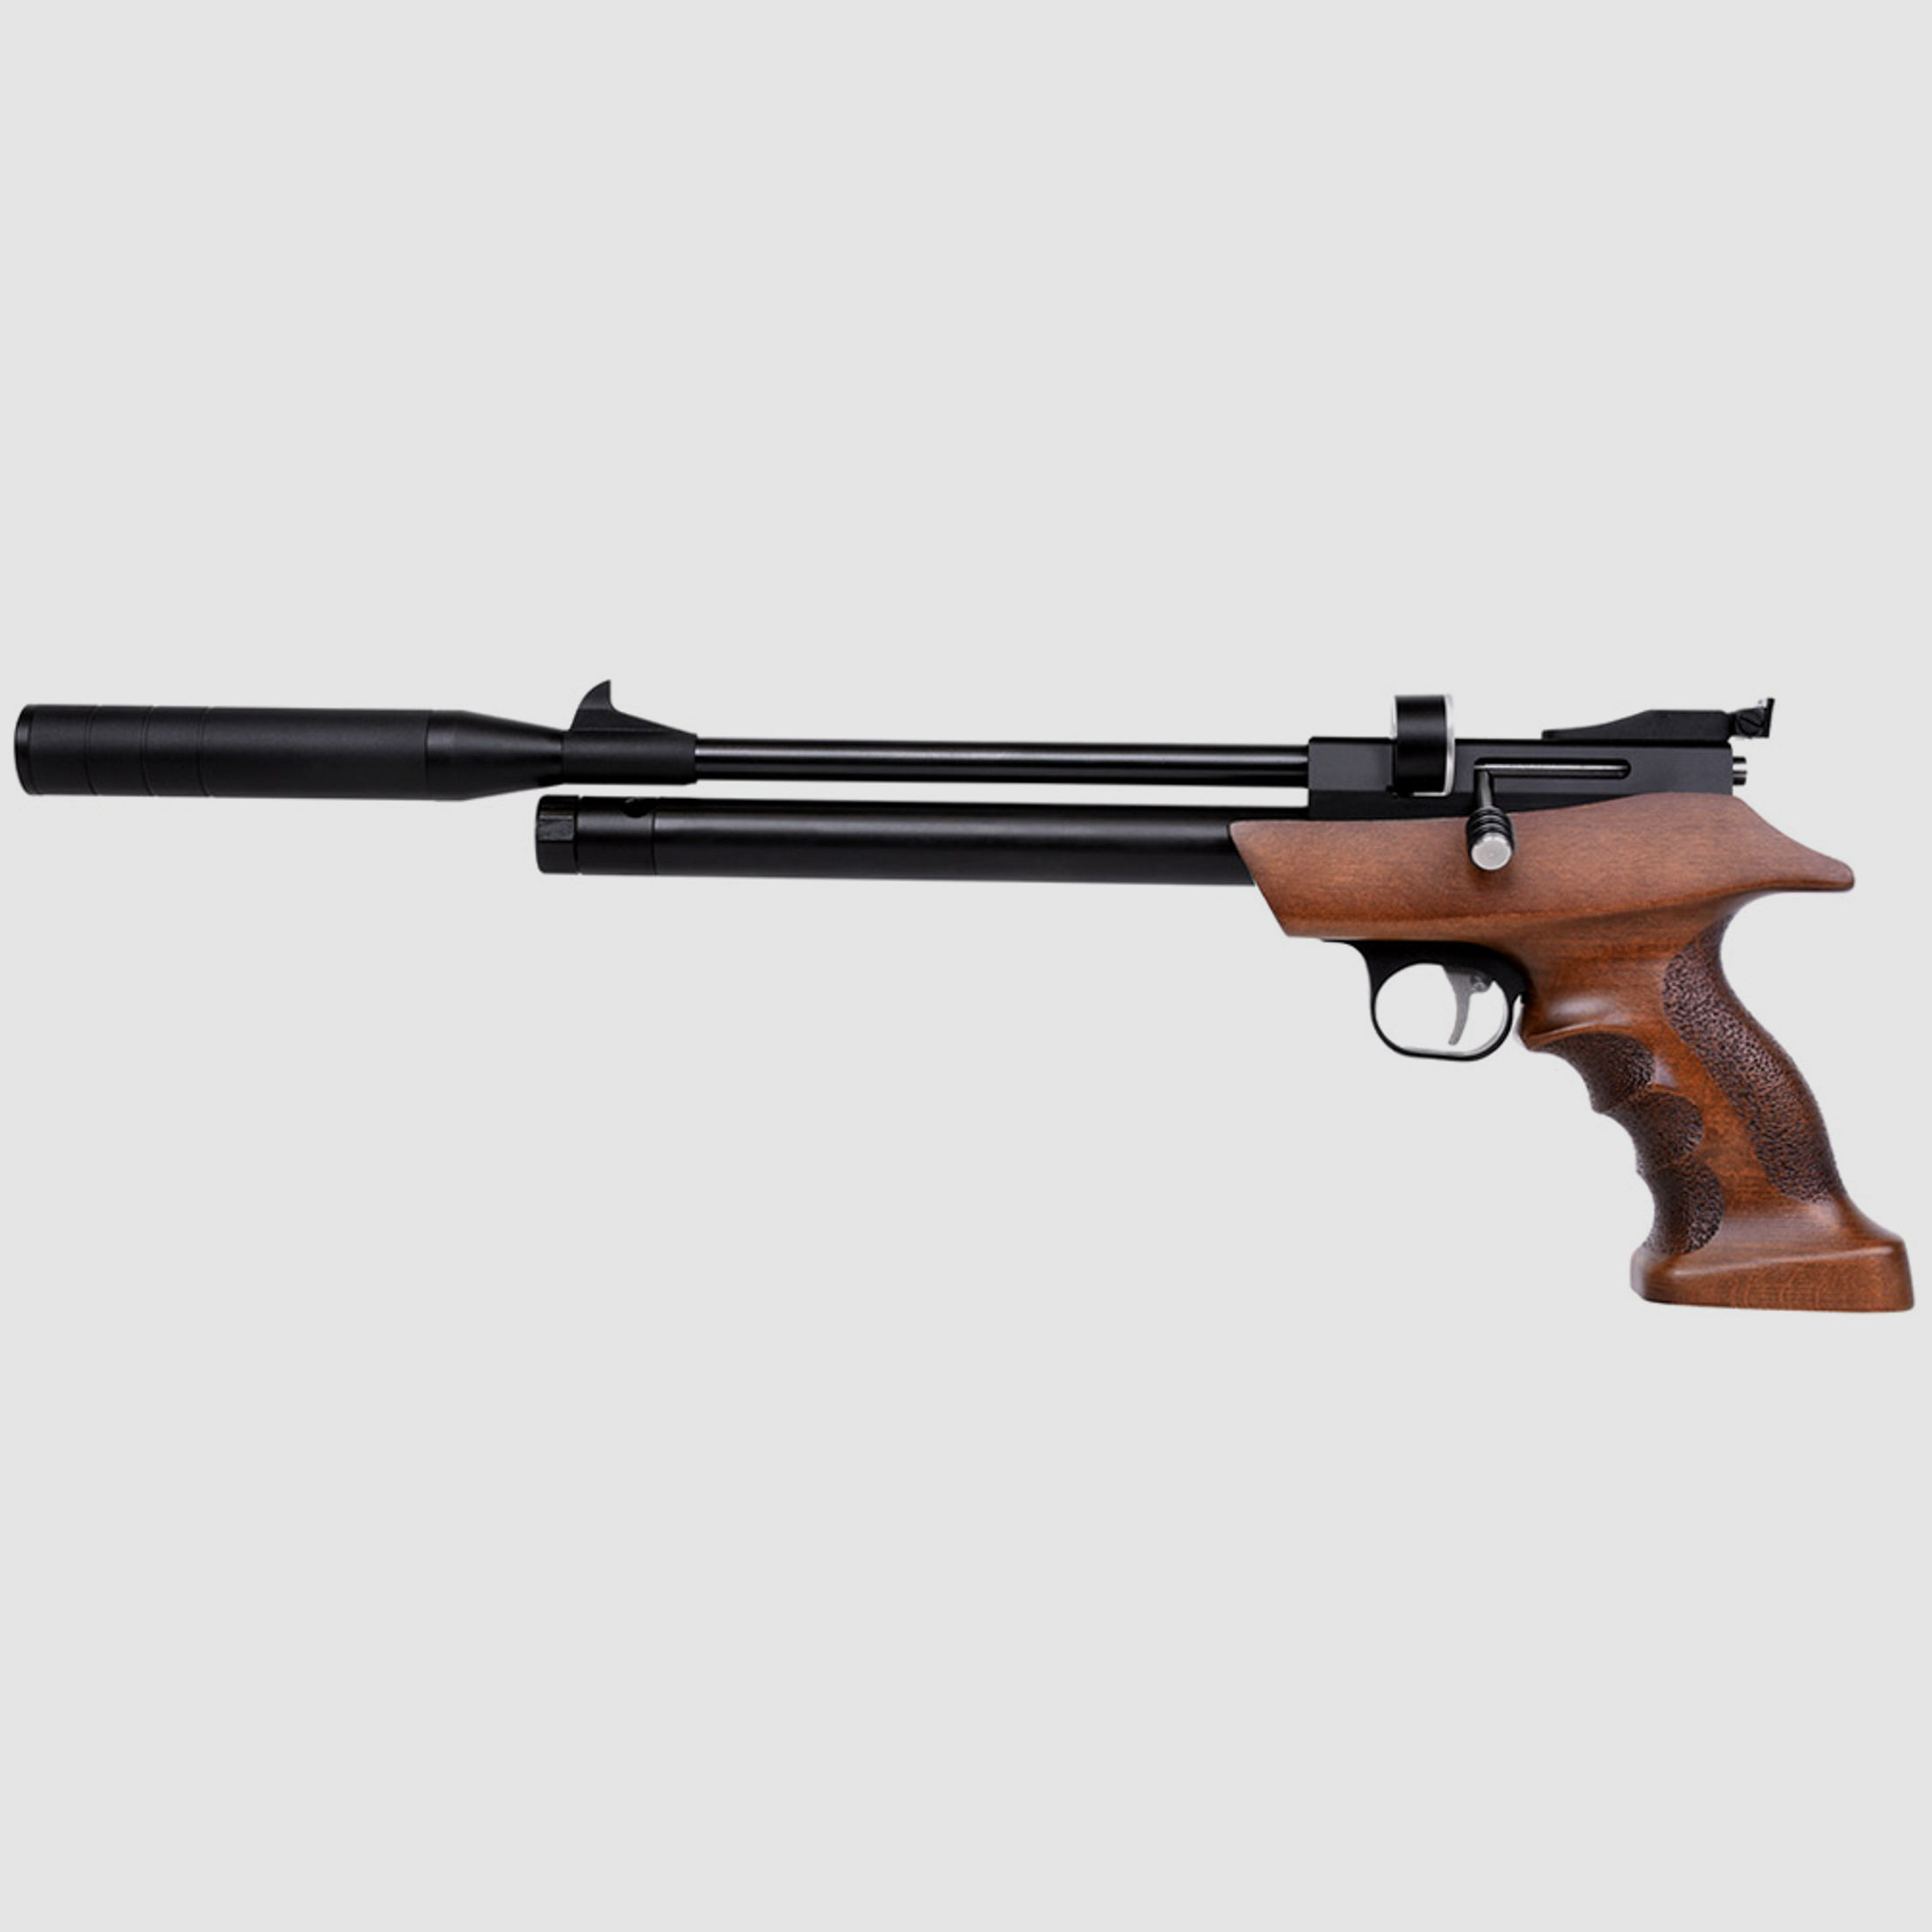 Pressluftpistole Diana Bandit Gen II Holz Matchgriff Fischhaut SchalldĂ¤mpfer Kaliber 4,5 mm (P18)